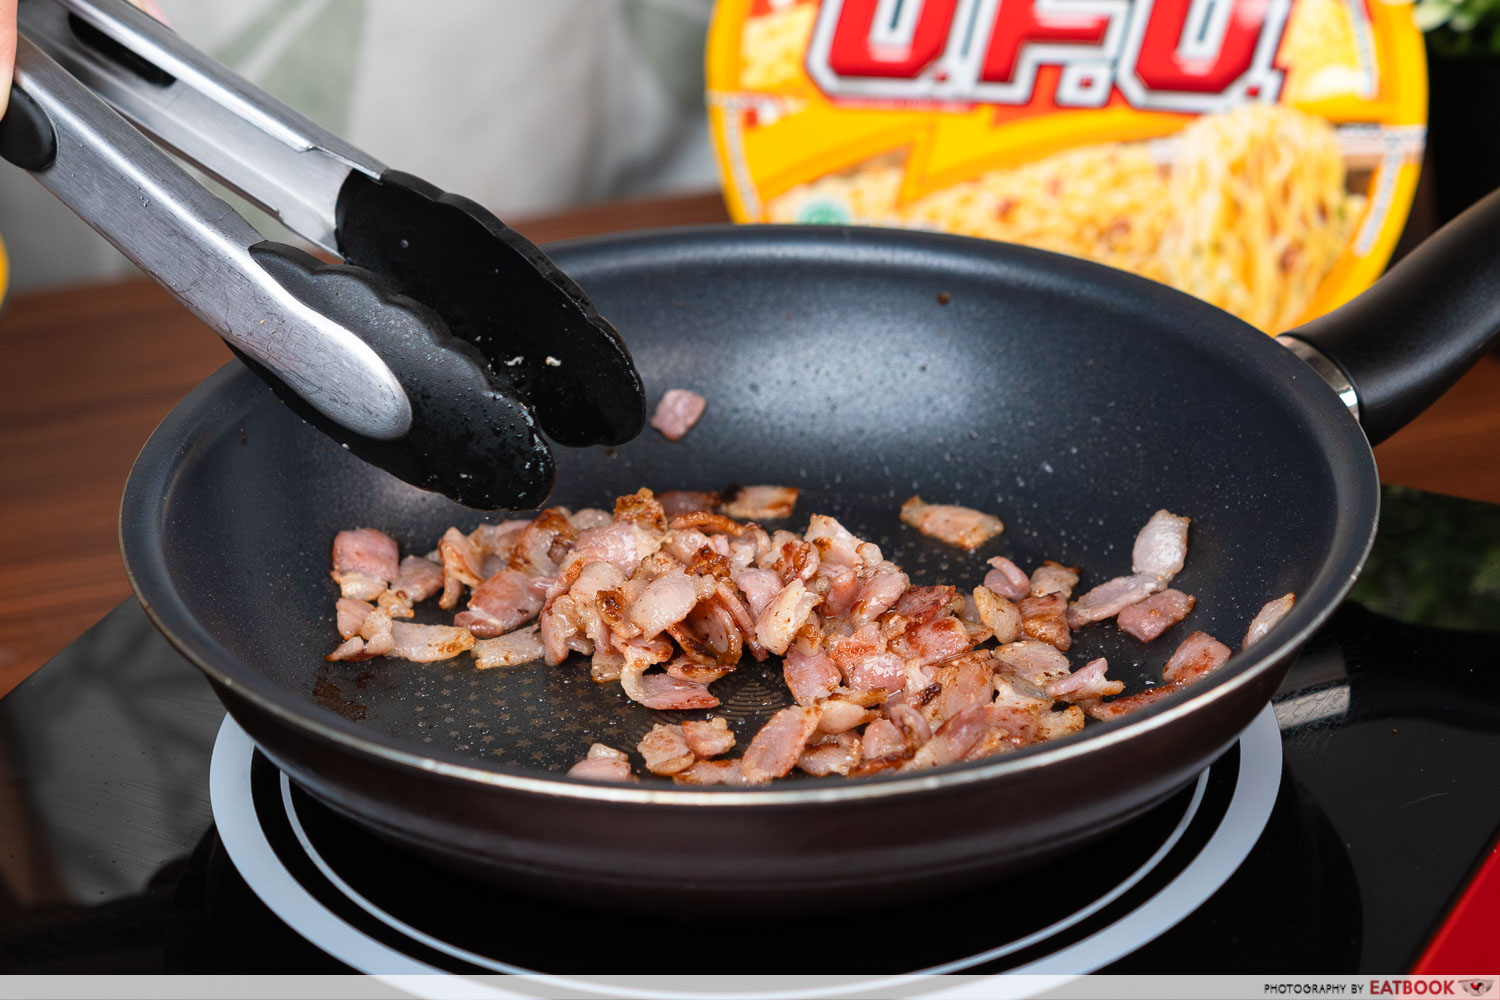 nissin ufo hacks - rendering bacon